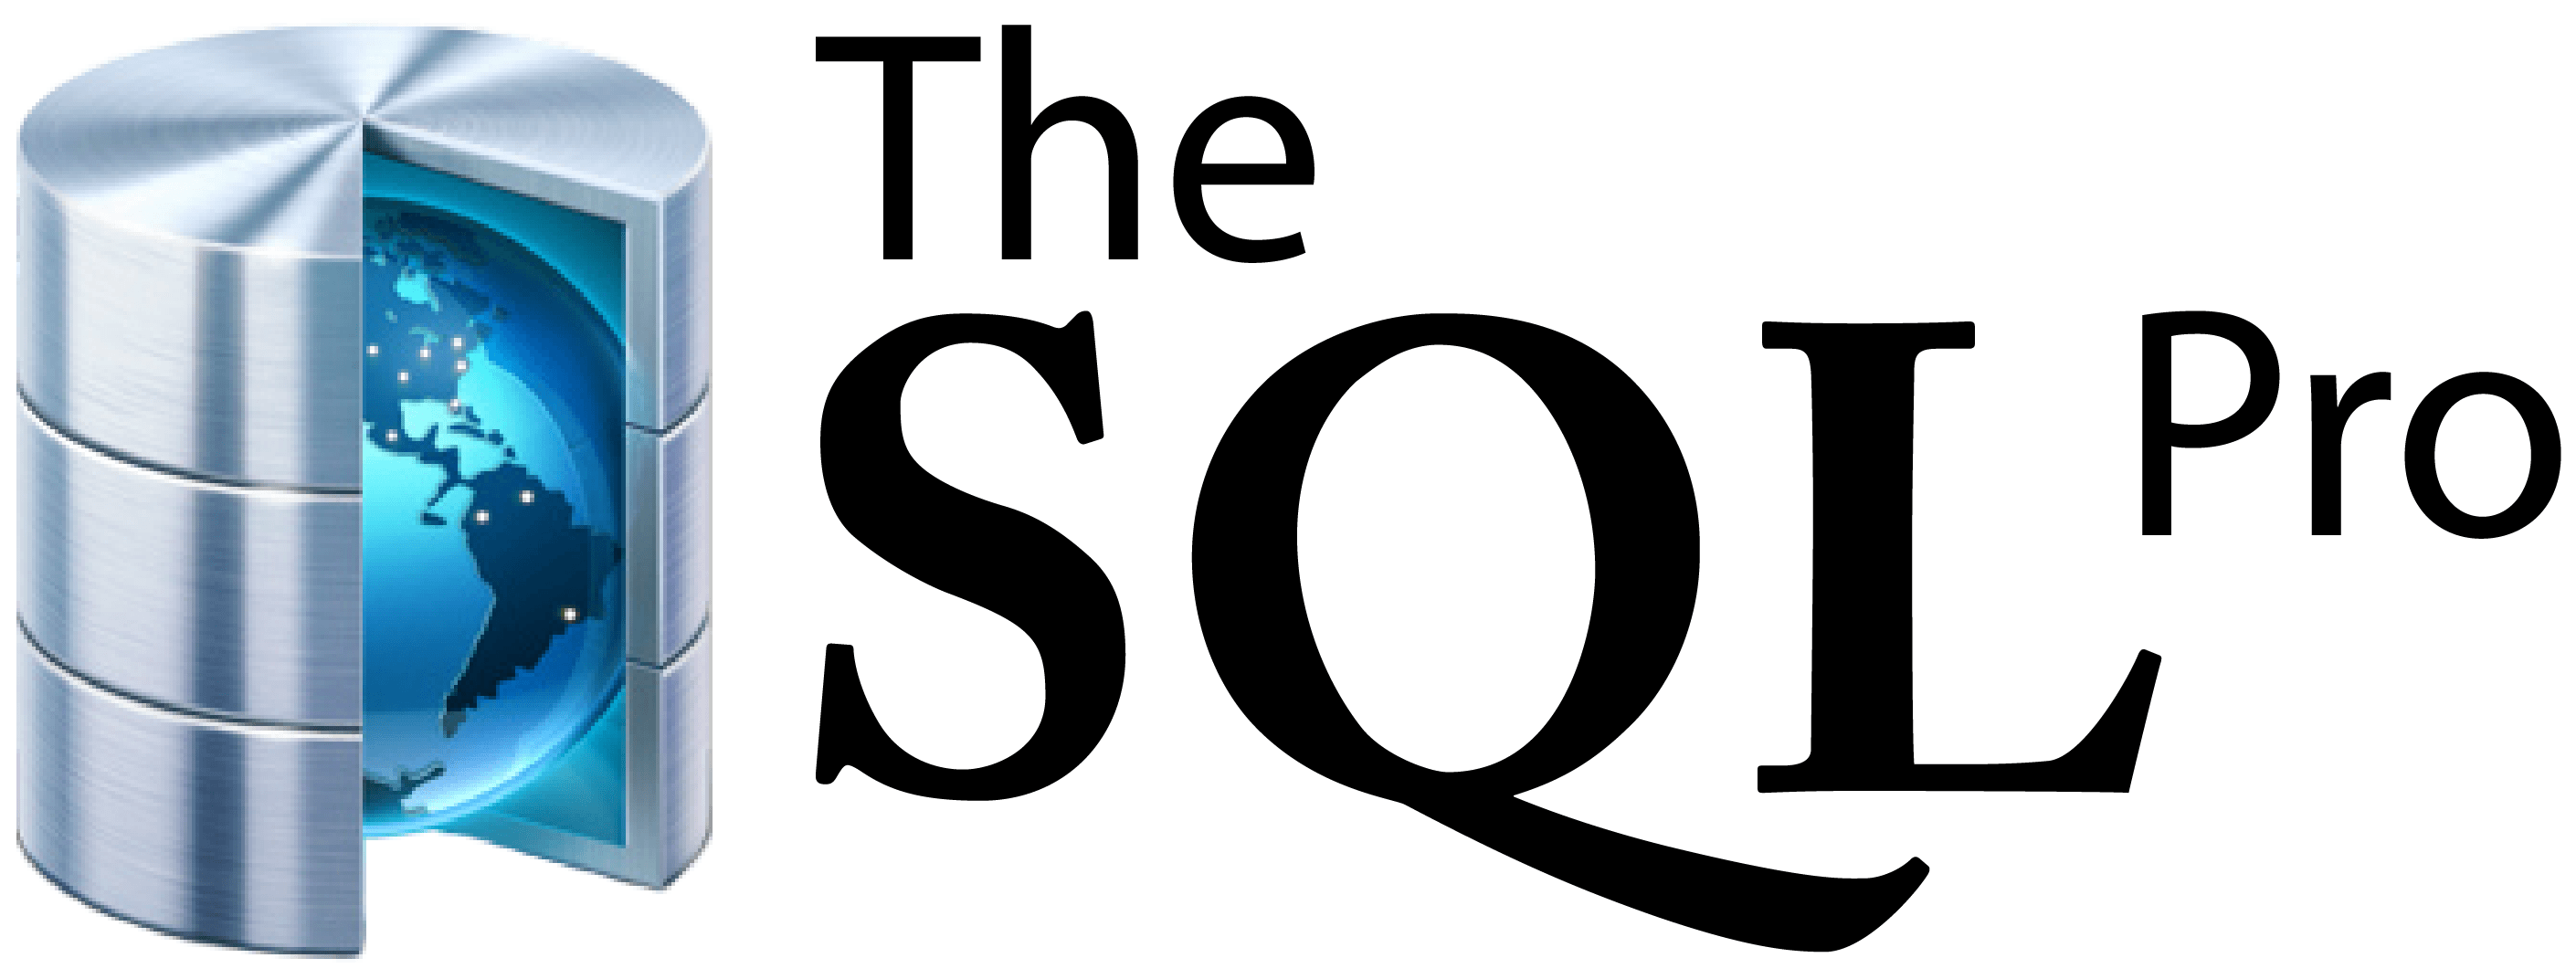 SQL Logo - New Logo and Media Partnership with SQL Server Live! 360 | The SQL Pro